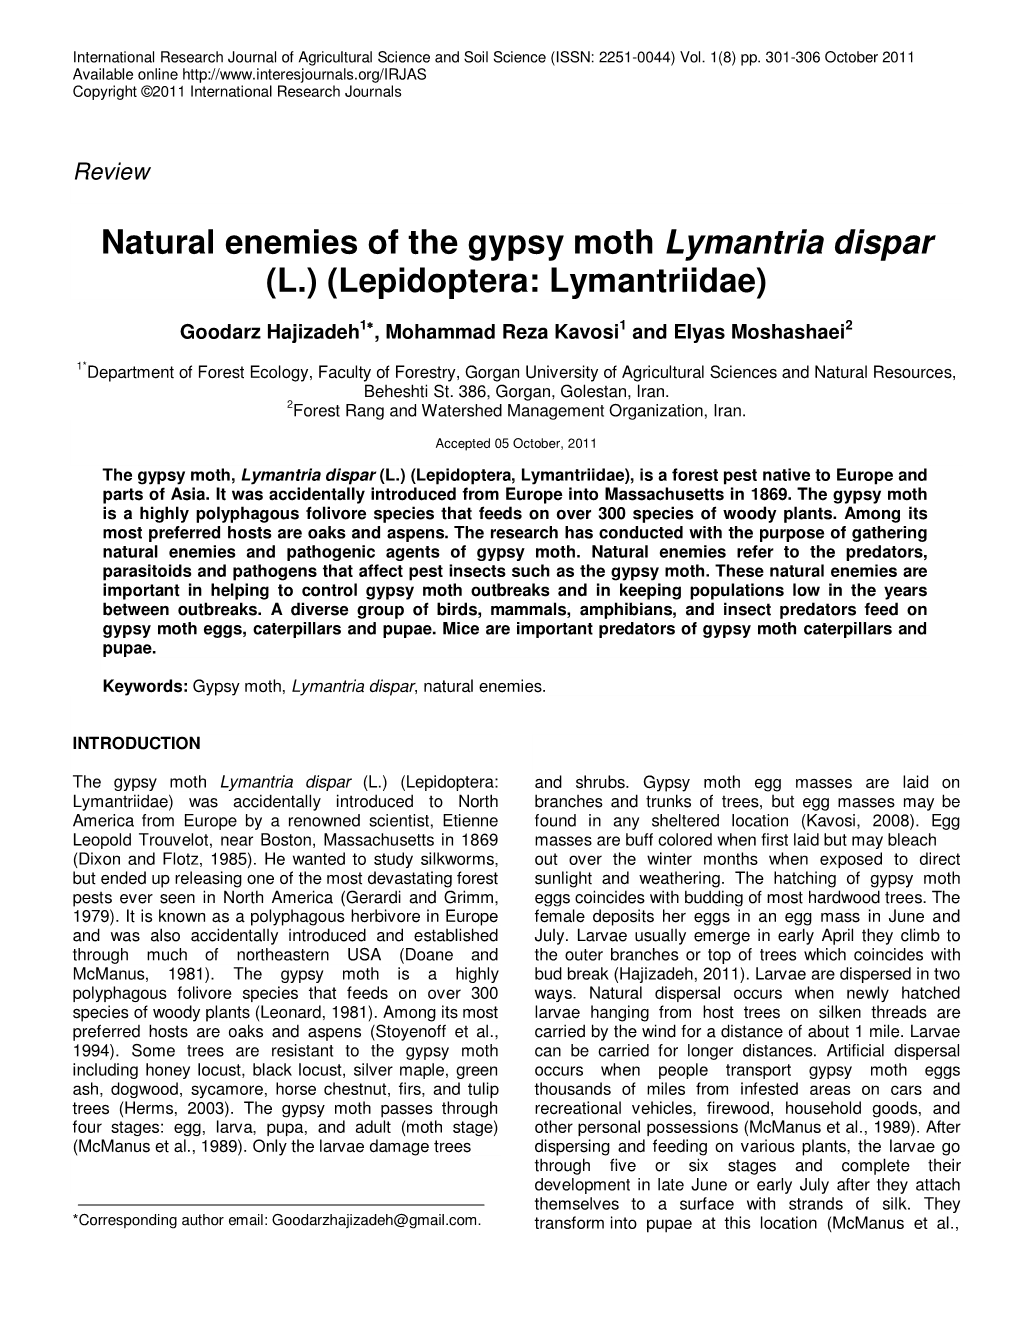 Natural Enemies of the Gypsy Moth Lymantria Dispar (L.) (Lepidoptera: Lymantriidae)